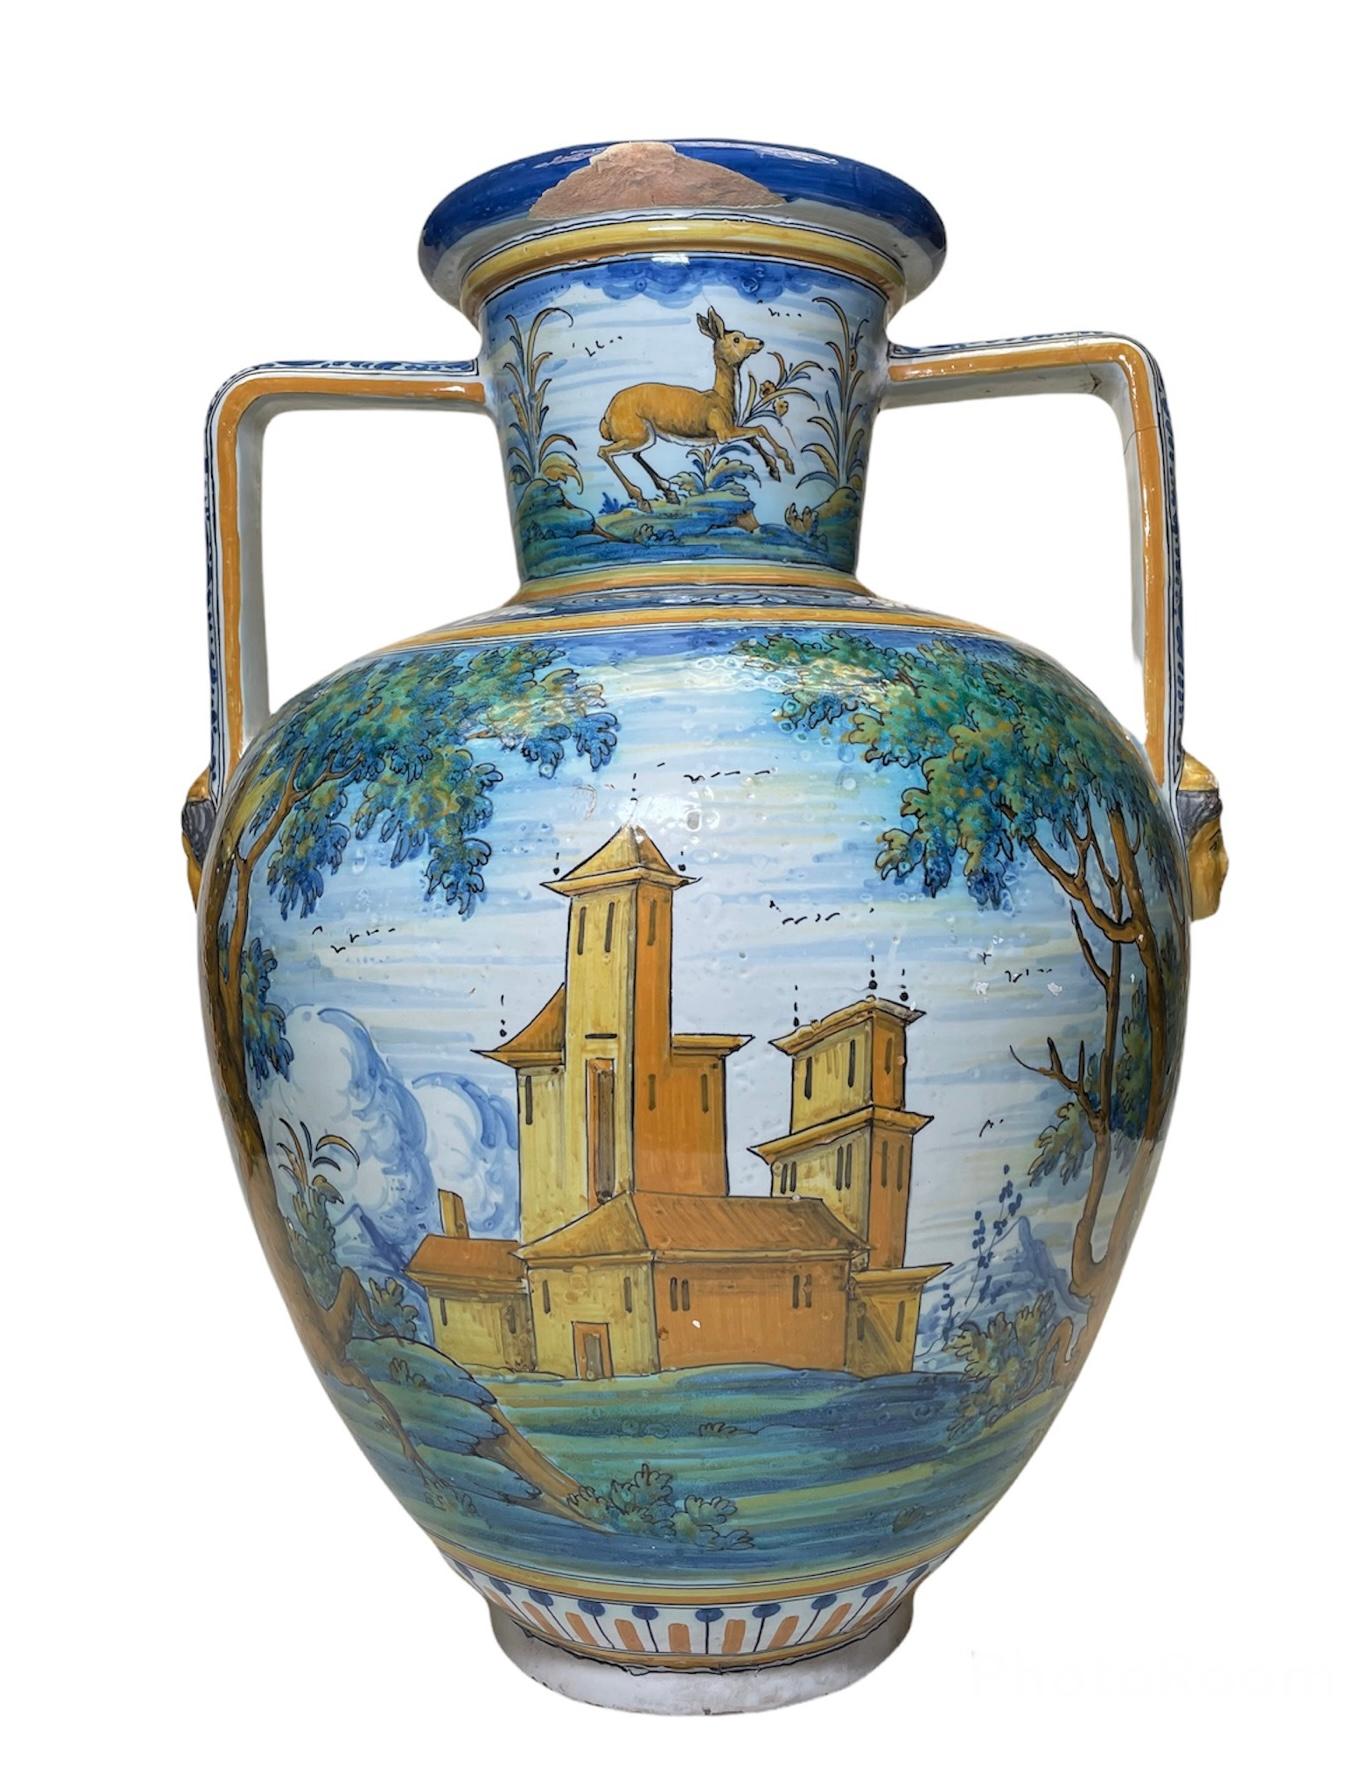 Il s'agit d'un grand vase amphore/urne en majolique de Talavera. Il est peint à la main dans le ventre avec une scène d'arrière-plan de campagne avec un mousquetaire à cheval d'un côté et une église de campagne ou un monastère de l'autre. Le cou est